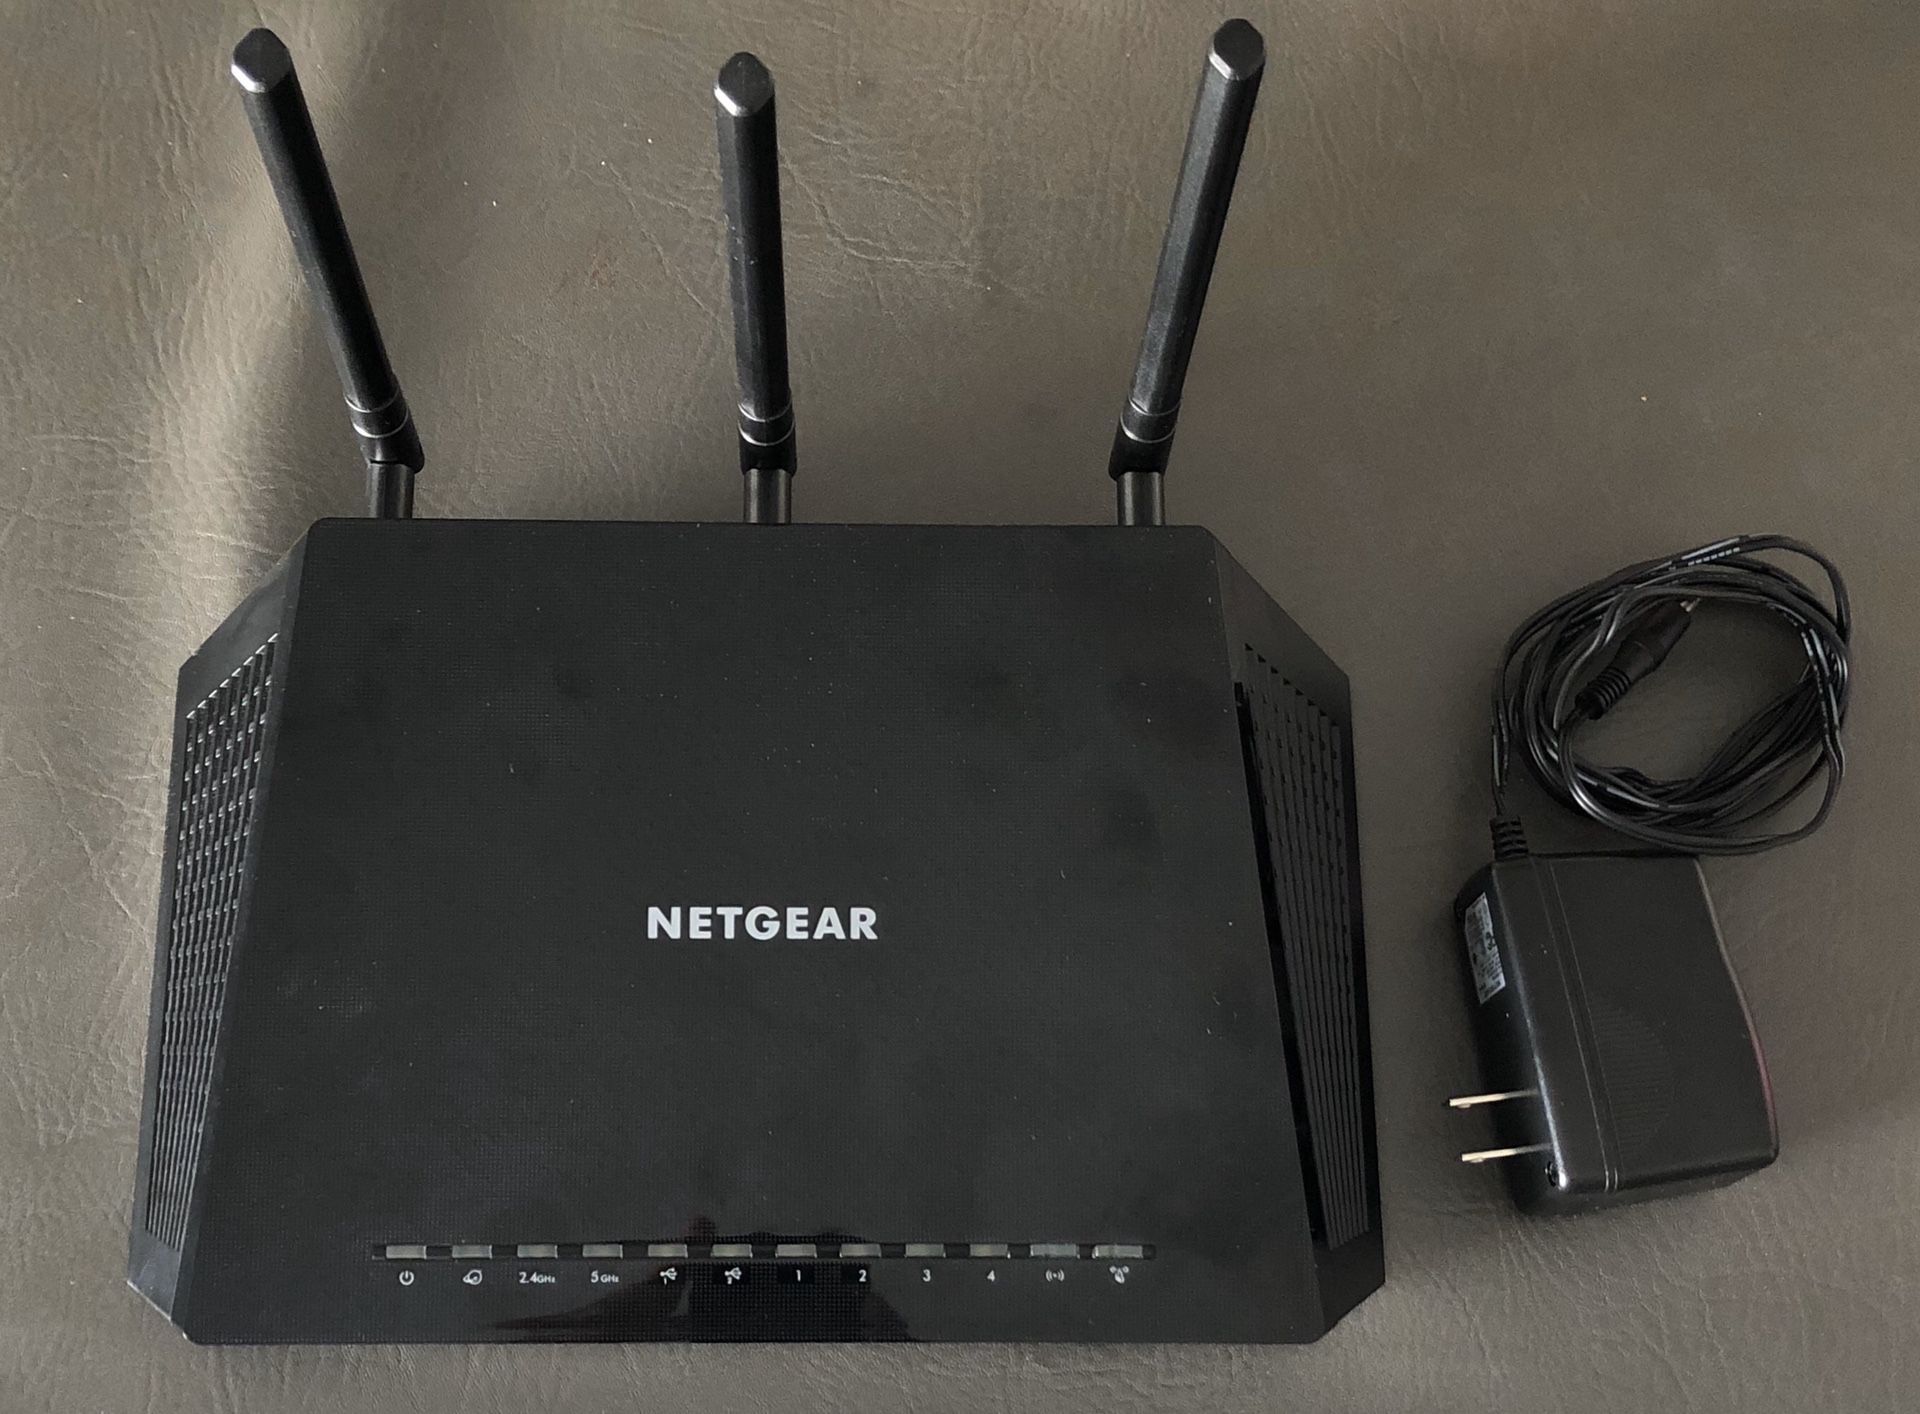 NETGEAR R6700 Nighthawk AC1750 Dual Band Smart WiFi Router, Gigabit Ethernet (R6700)